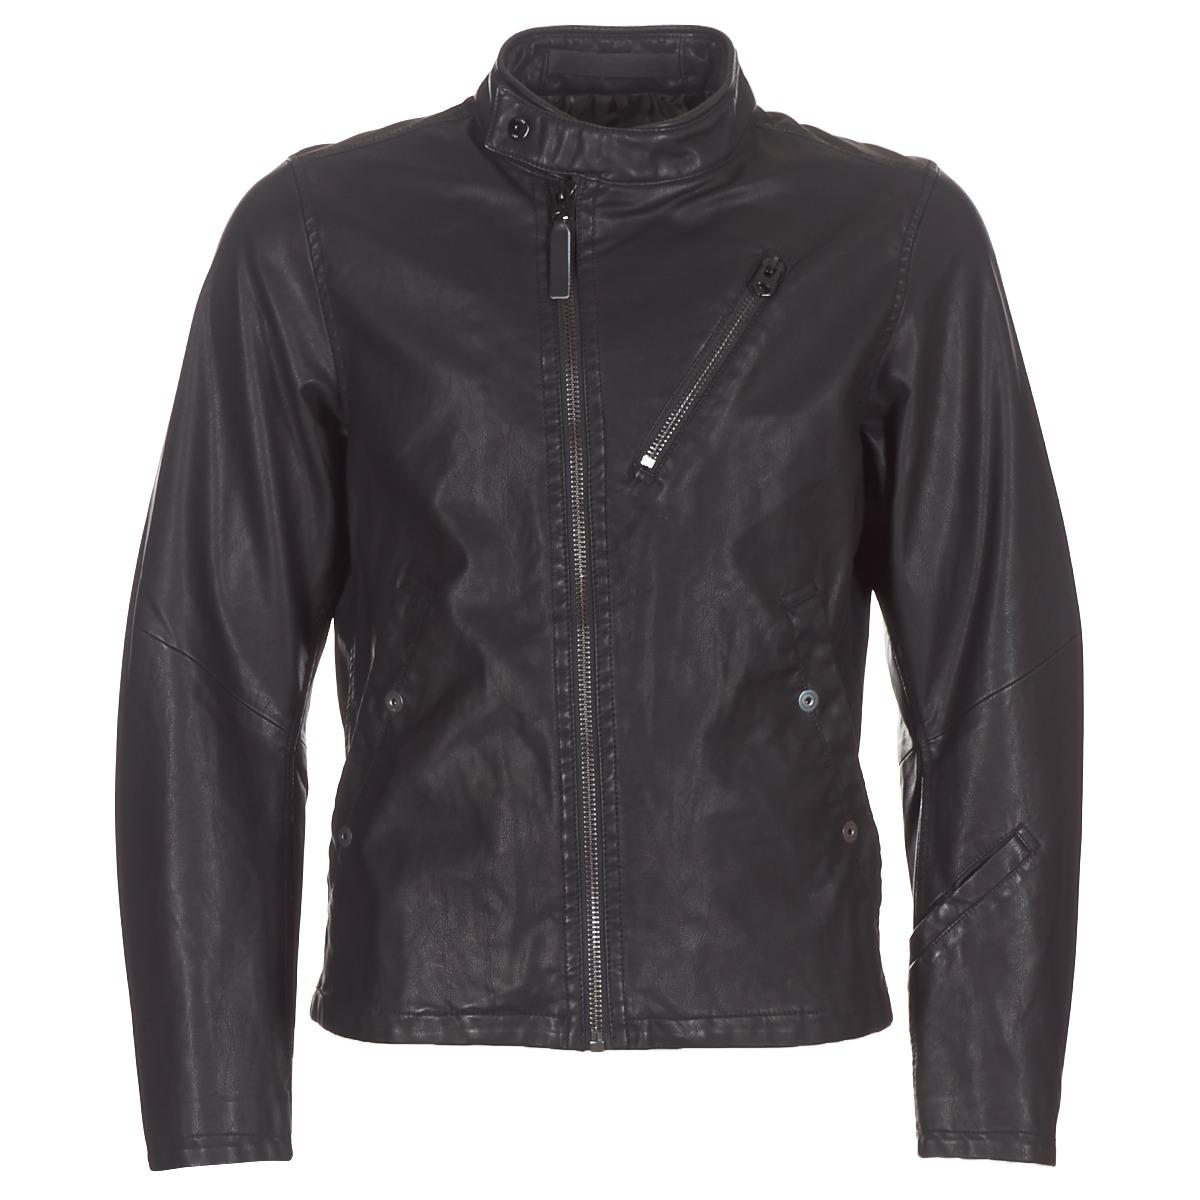 G-Star RAW Empral 3d Gpl Biker Jkt Leather Jacket in Black for Men - Save  12% - Lyst